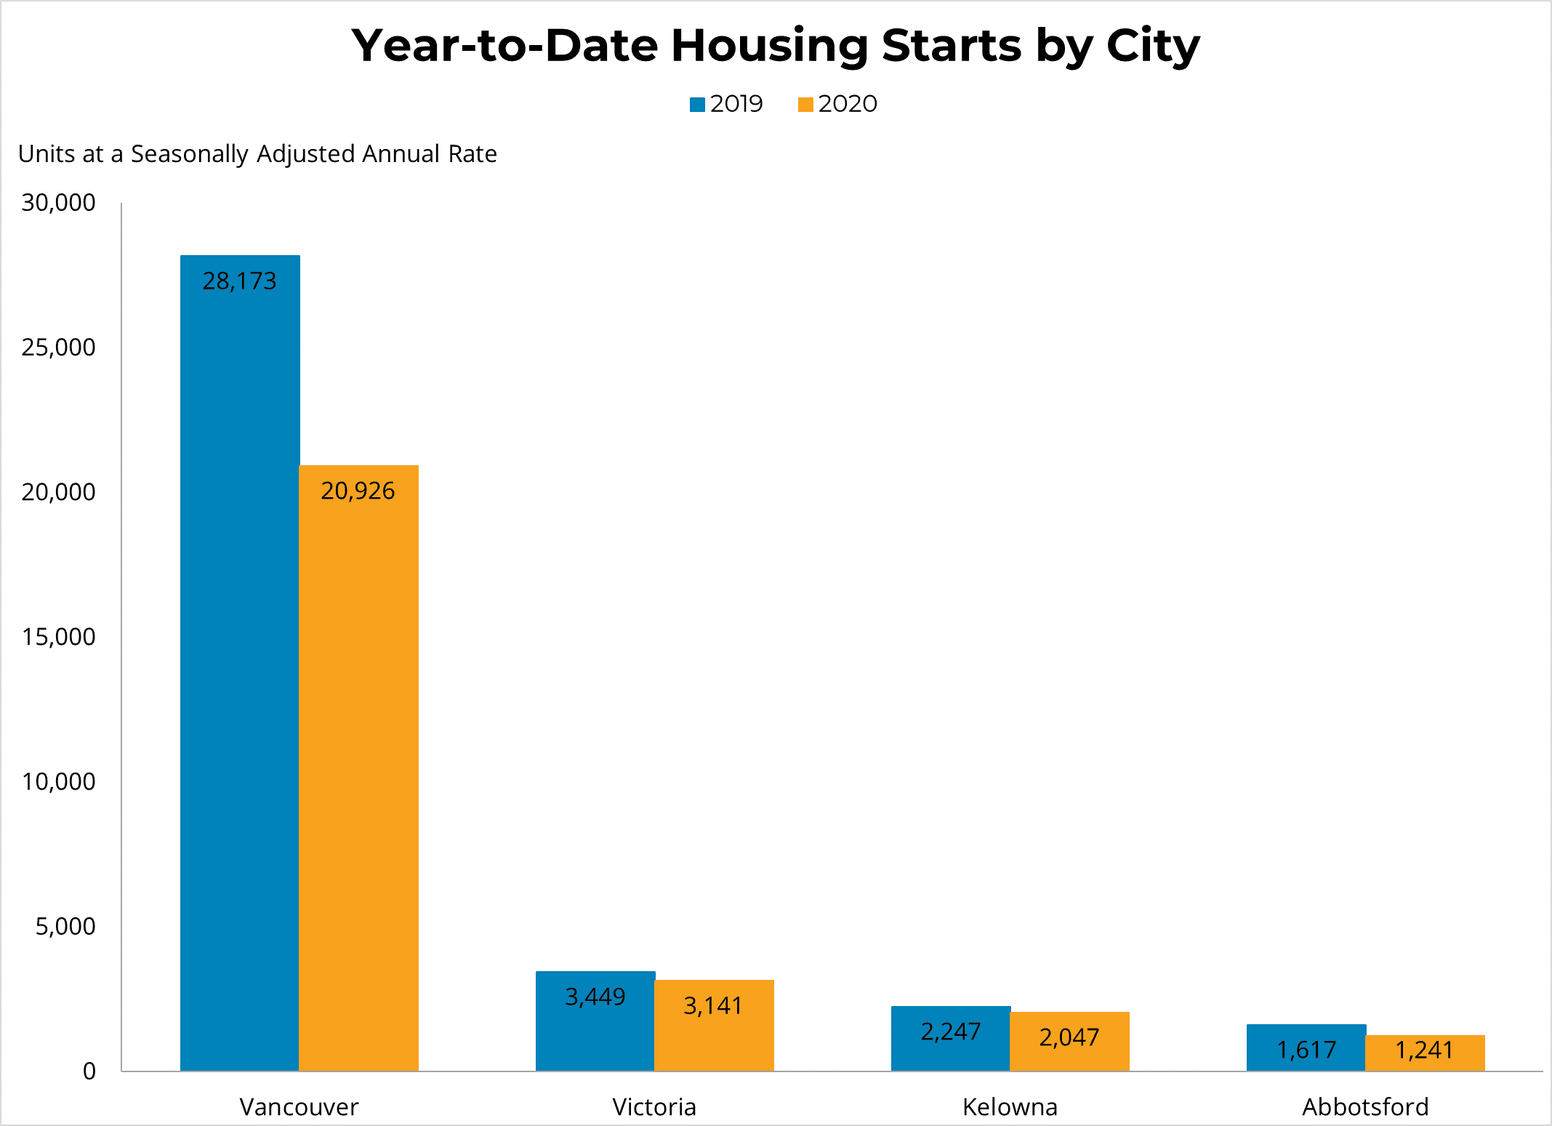 YTD Housing Starts by City